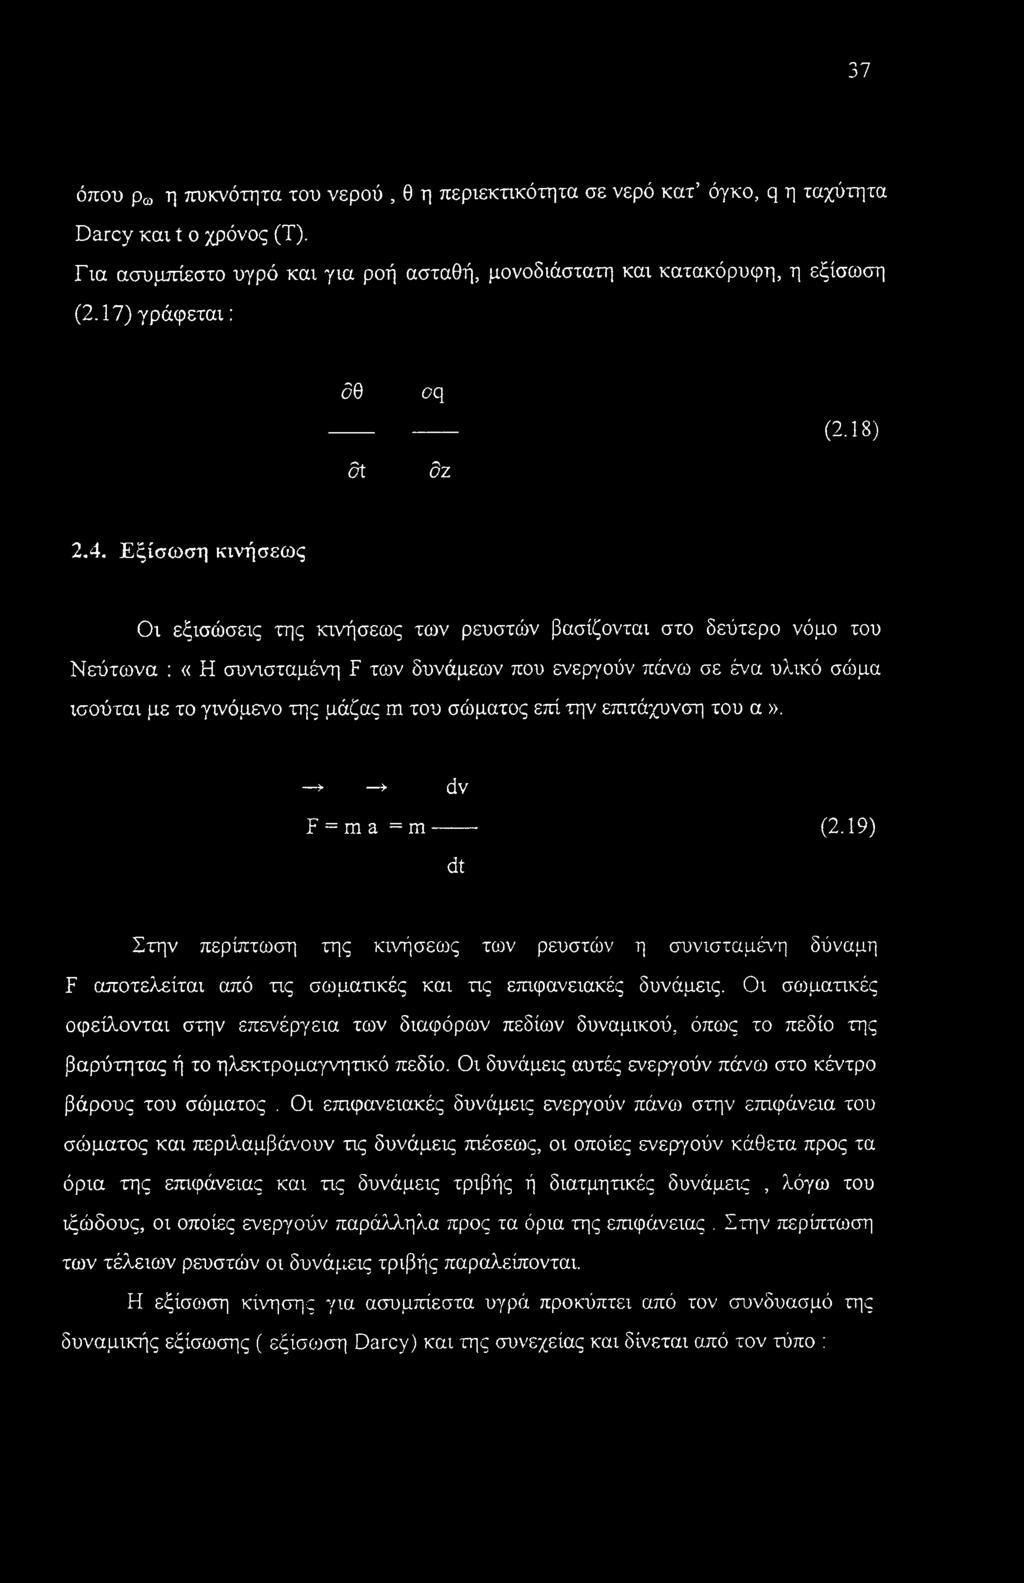 Εξίσωση κινήσεως Οι εξισώσεις της κινήσεως των ρευστών βασίζονται στο δεύτερο νόμο του Νεύτωνα : «Η συνισταμένη F των δυνάμεων που ενεργούν πάνω σε ένα υλικό σώμα ισούται με το γινόμενο της μάζας m